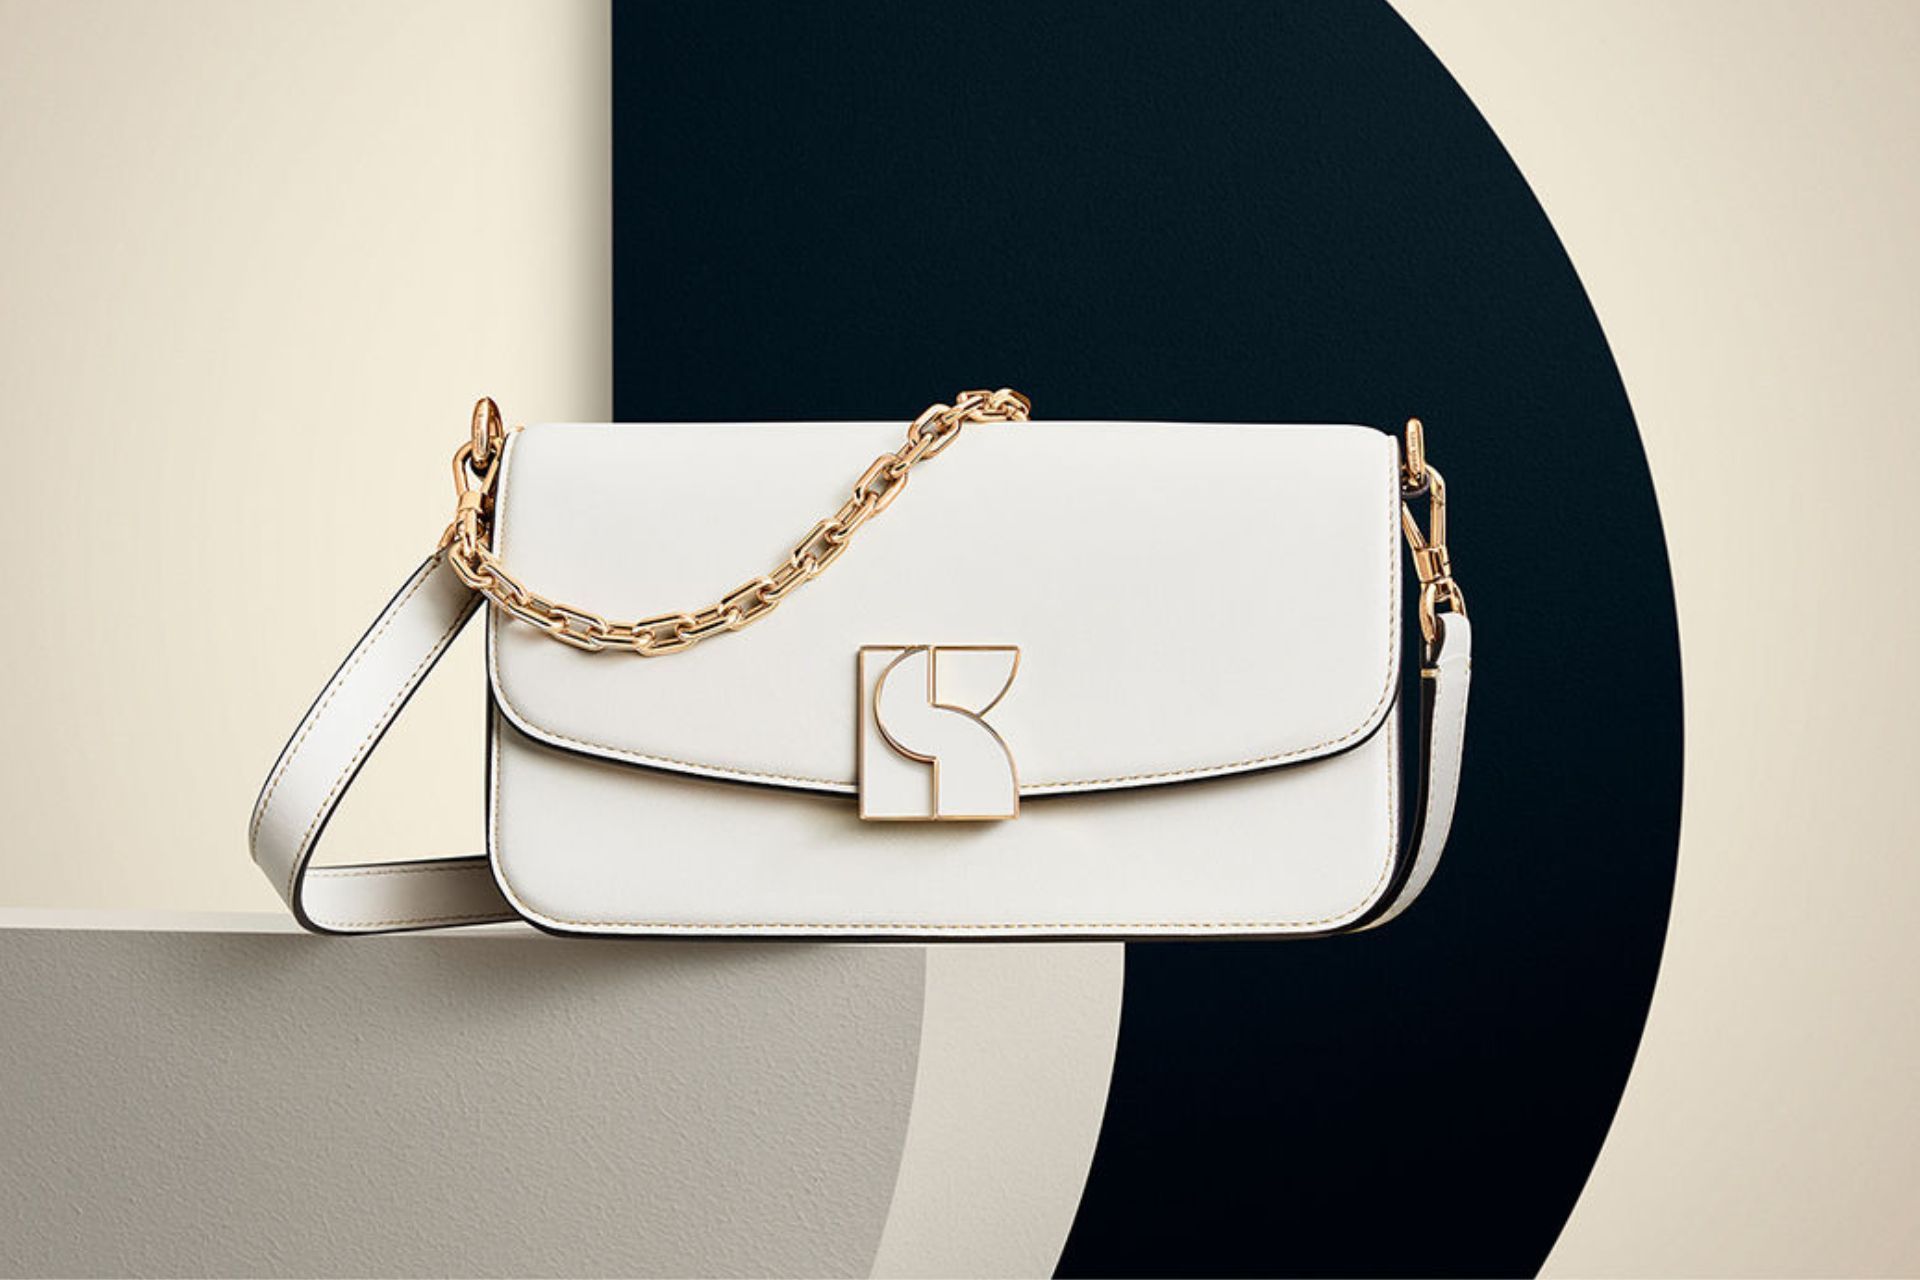 Kate Spade New York Designer Bags in Handbags 